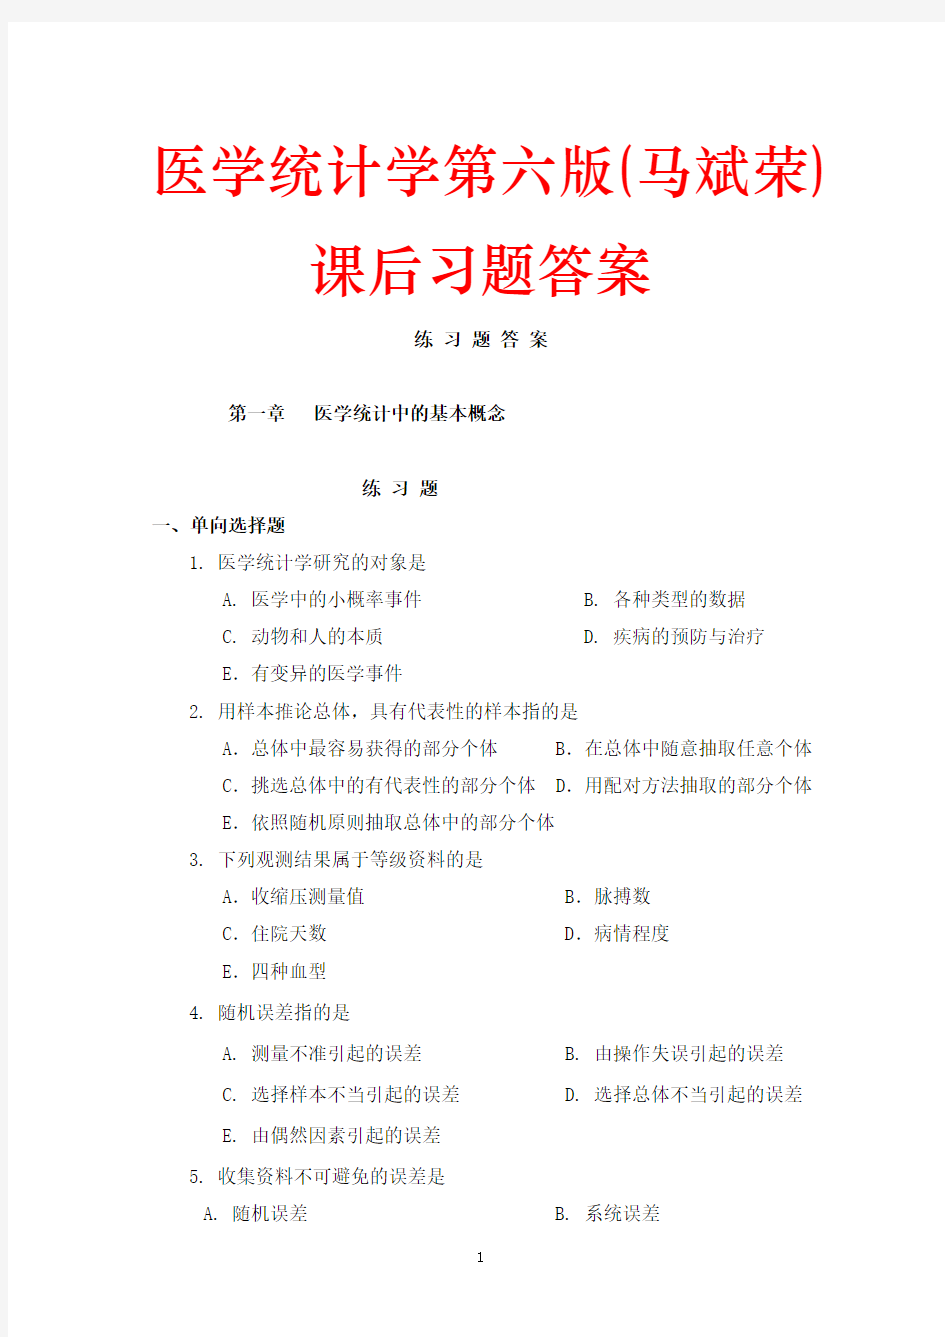 医学统计学第六版(马斌荣)课后习题答案